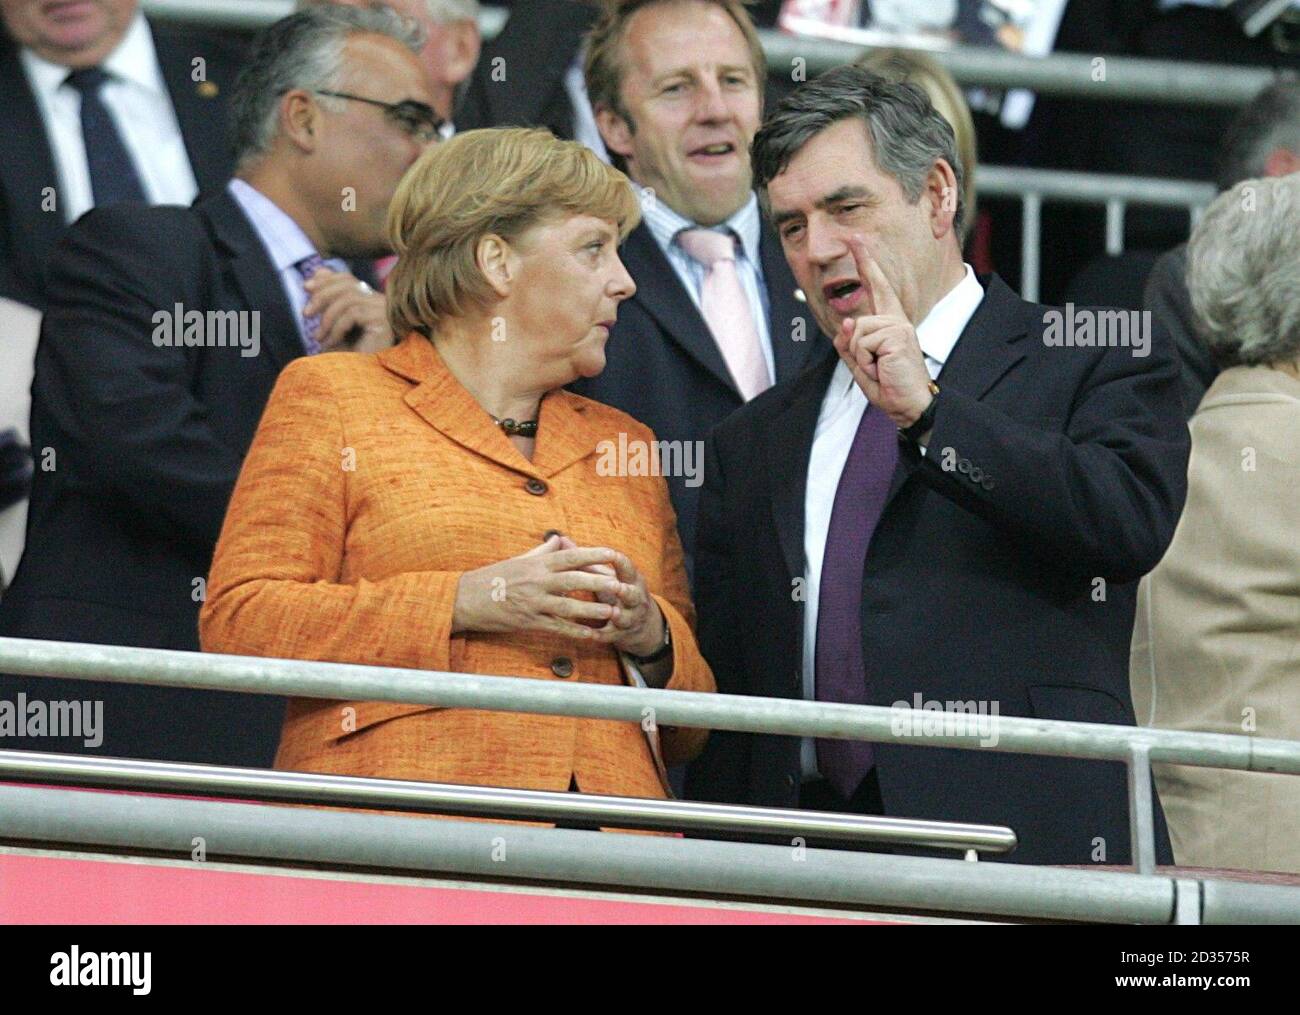 Le Premier ministre britannique Gordon Brown et la chancelière allemande Angela Merkel dans les tribunes Banque D'Images